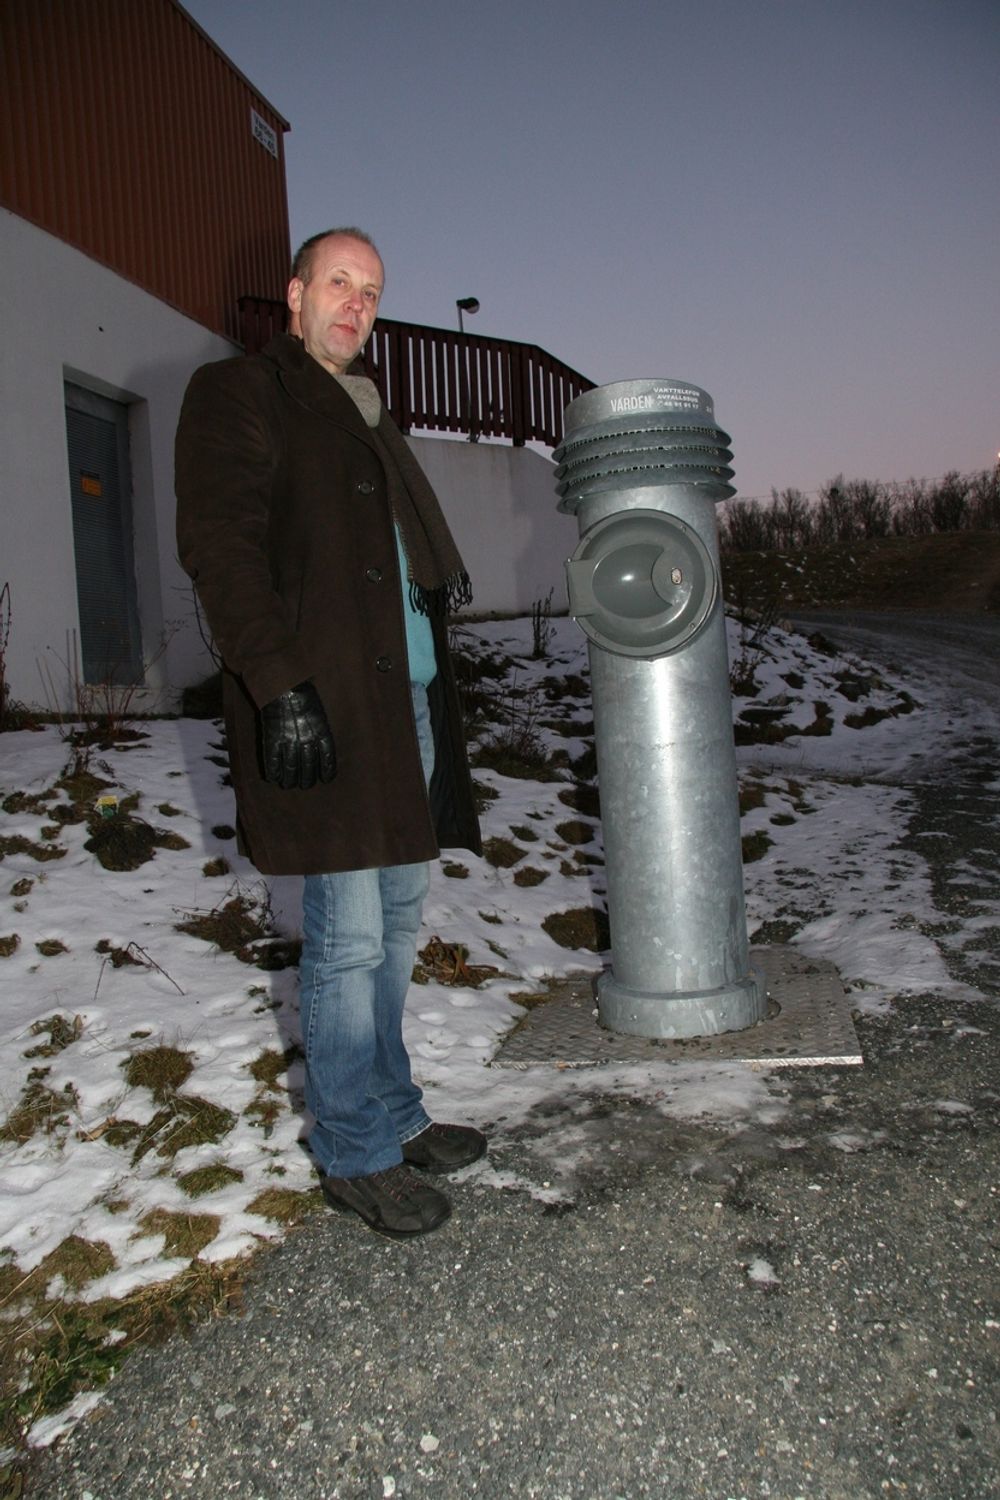 DISKRET: Bård Jørgensen viser her ett av de 42 nedkastene som erstattet store stygge containere før røranlegget ble montert i fjor.